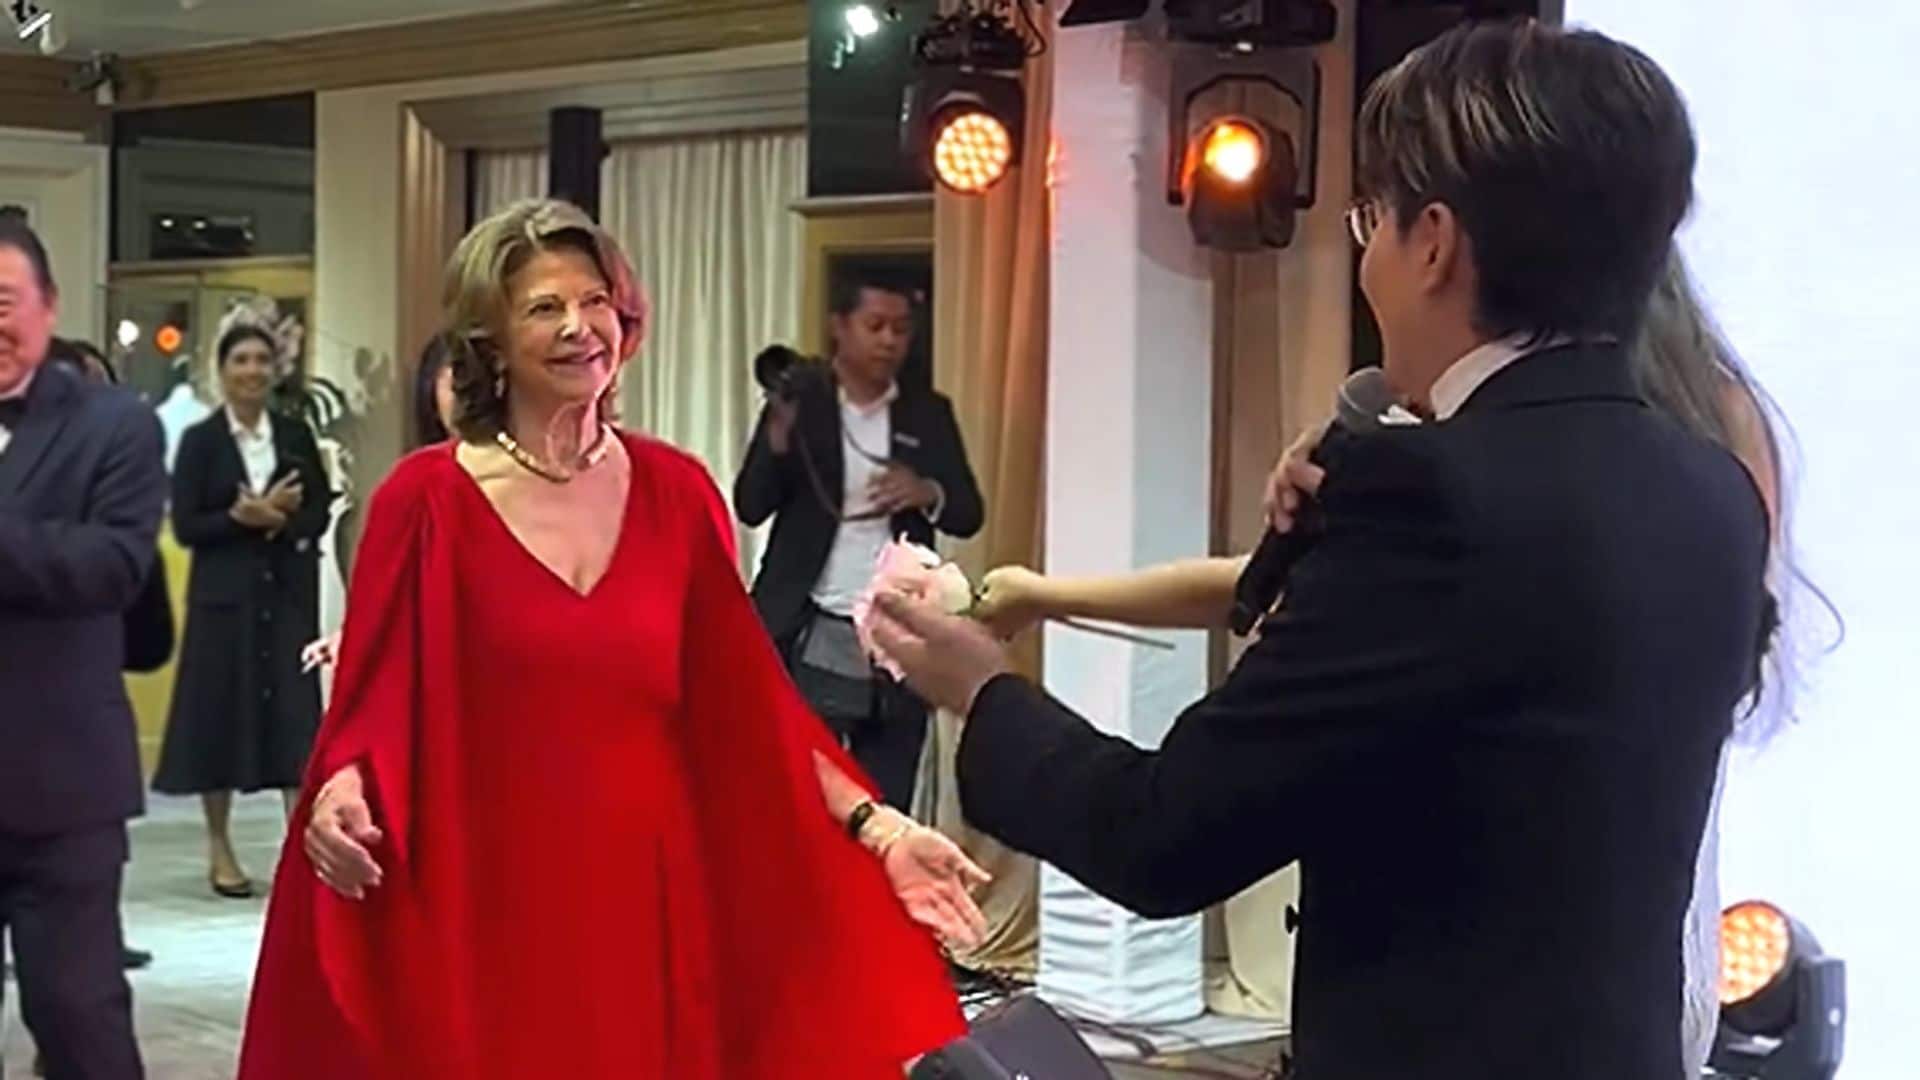 El momentazo de Silvia de Suecia bailando en Tailandia a ritmo de ABBA, ¡la auténtica 'Dancing Queen'!